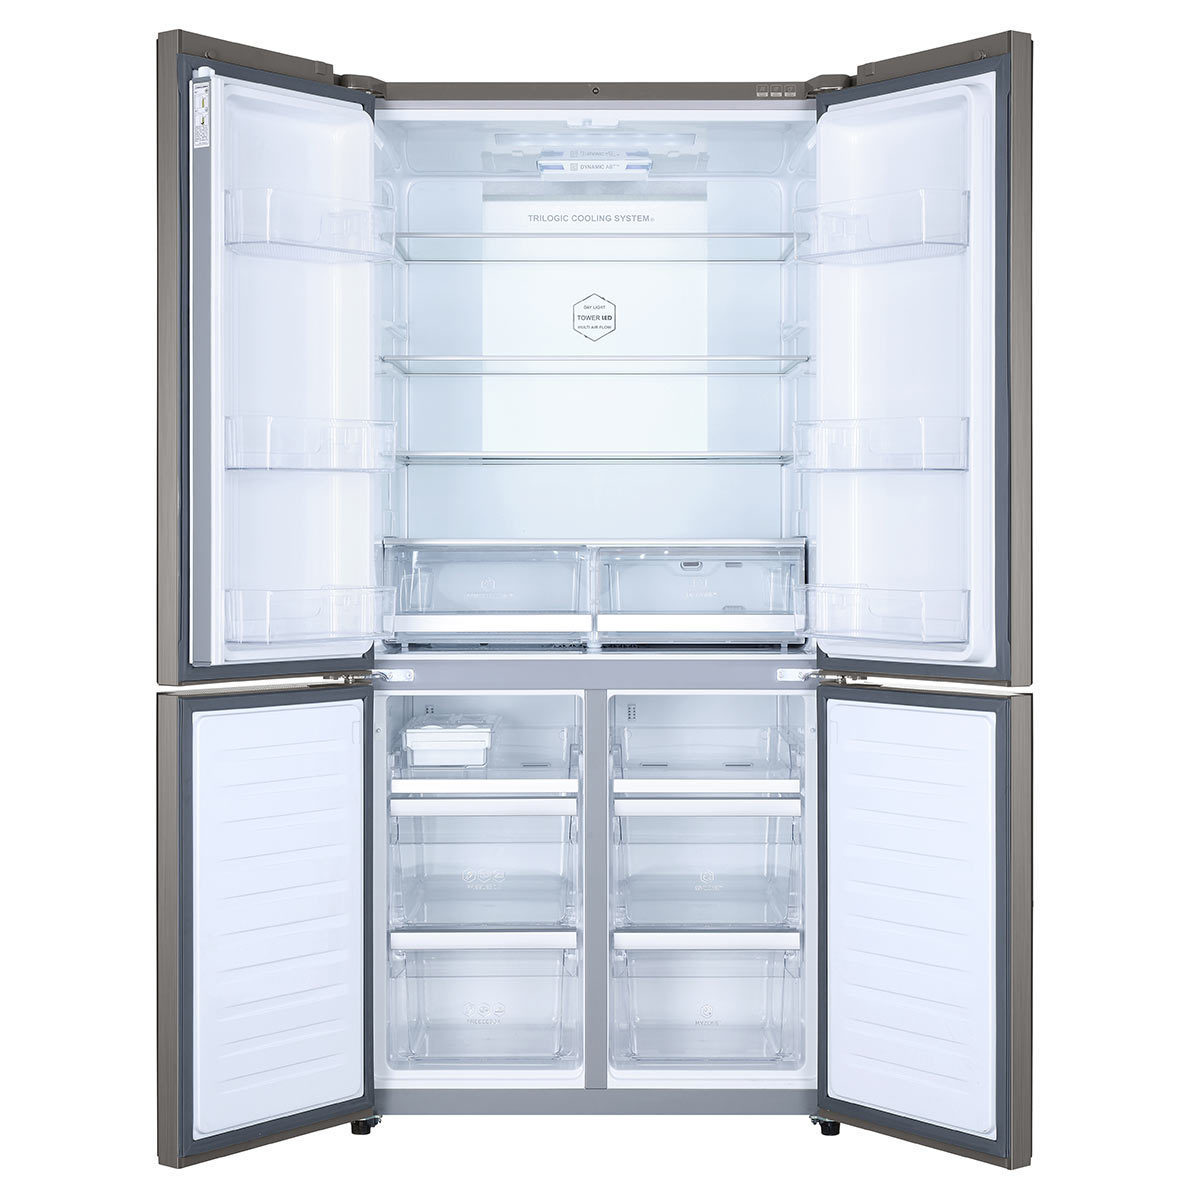 Front view of fridge, doors open, empty